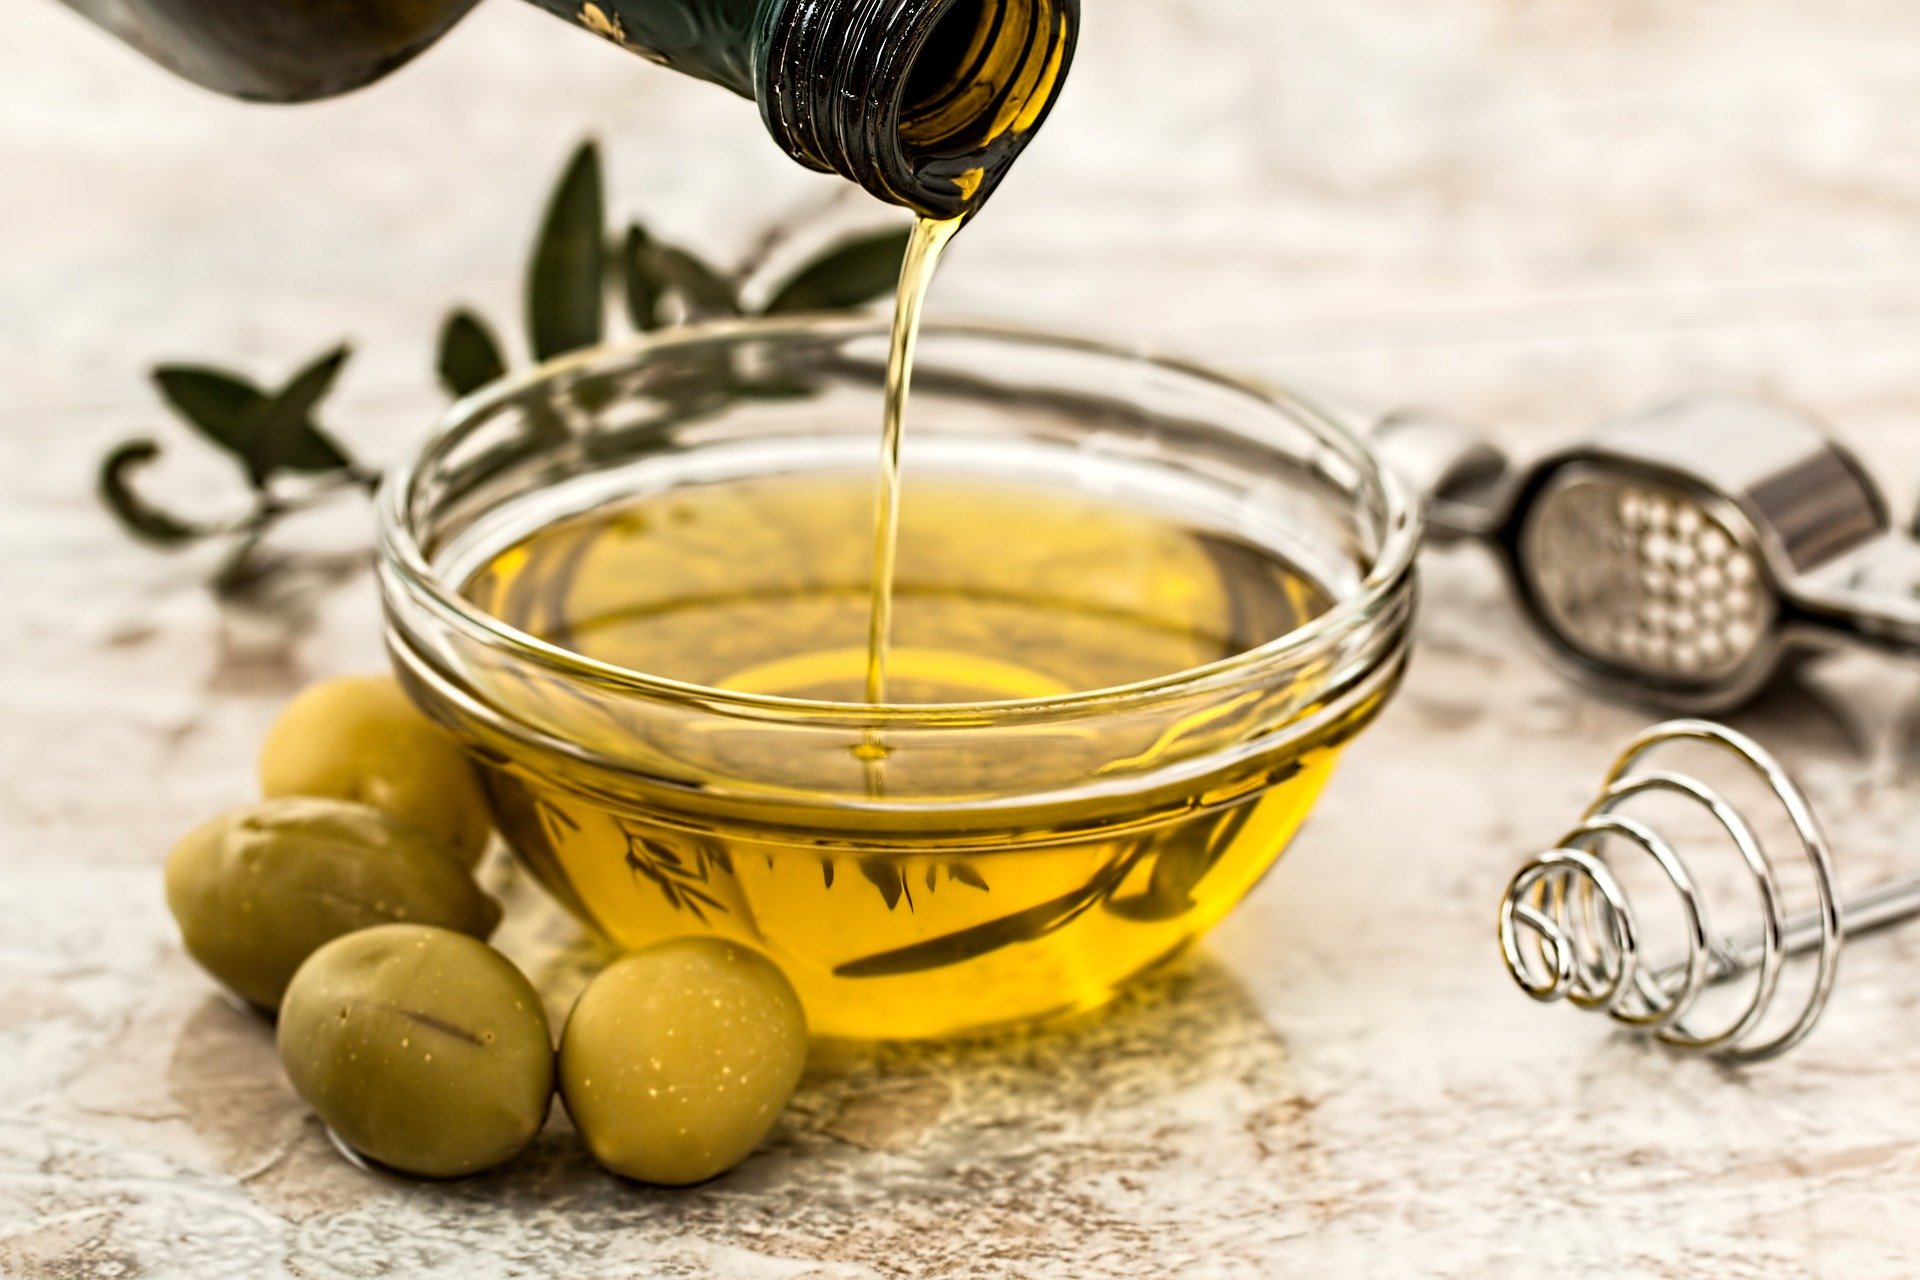 I migliori oli di oliva: confronto agosto 2021